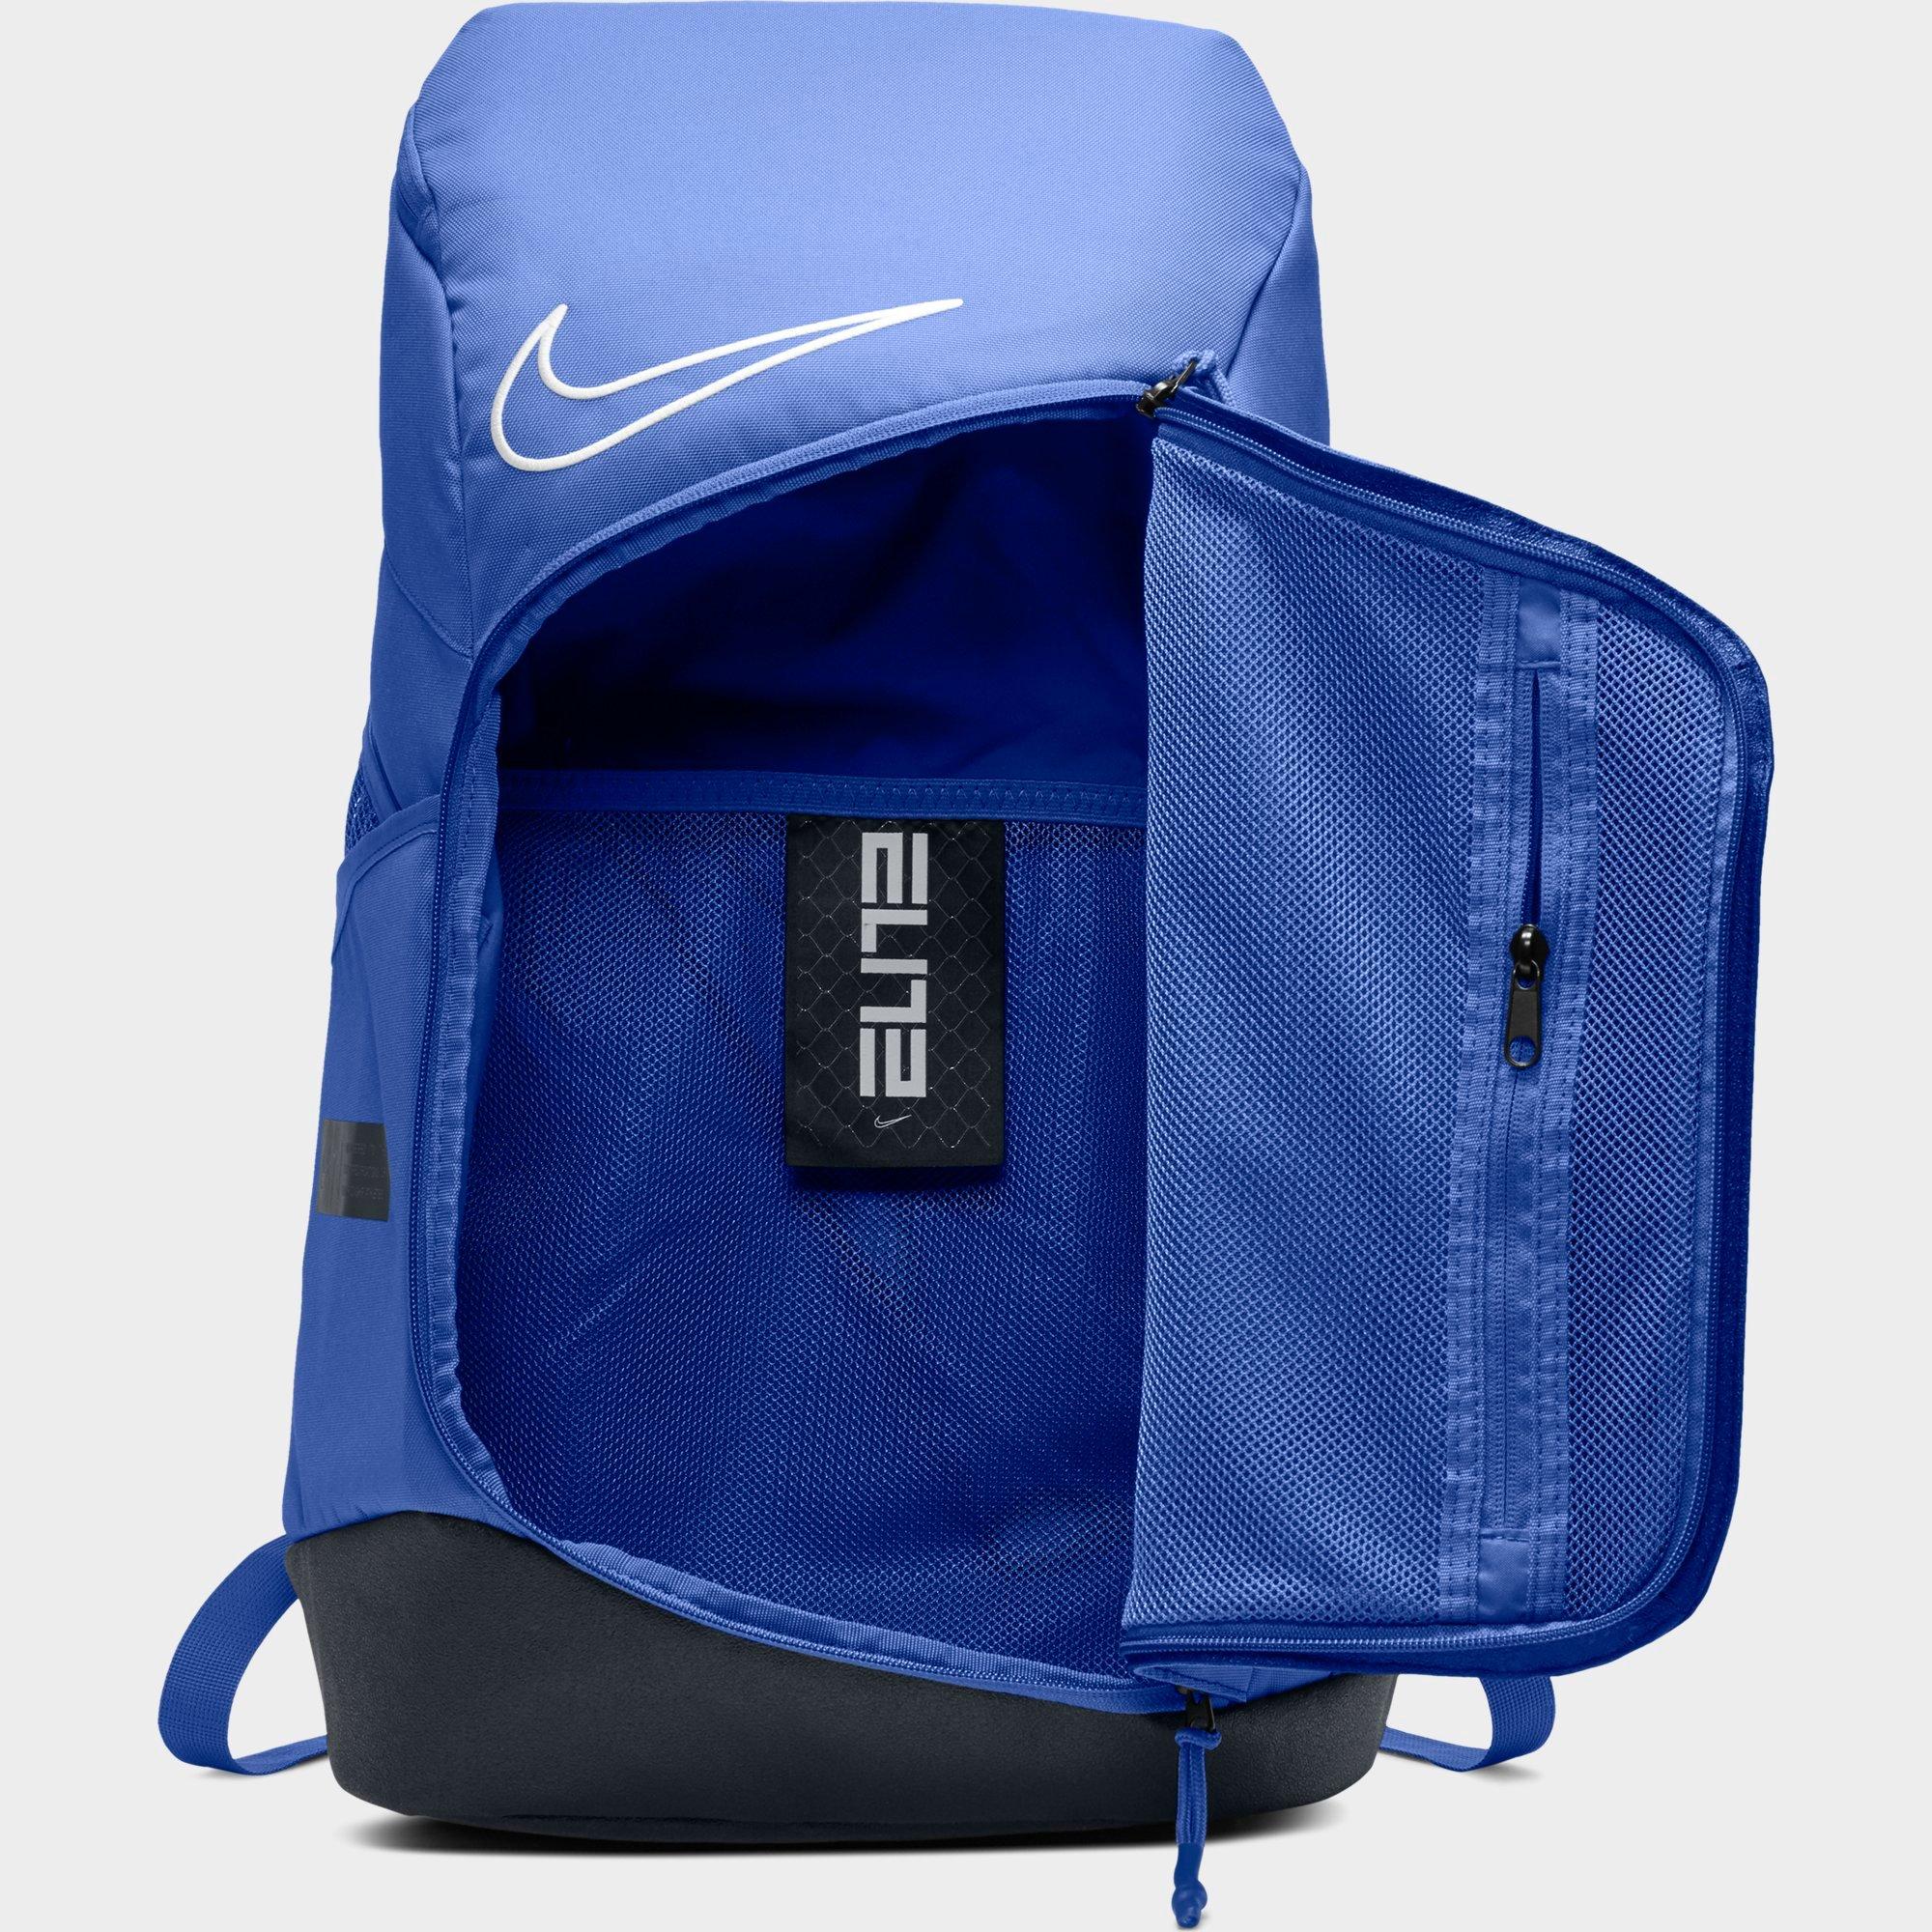 nike elite backpack blue and white